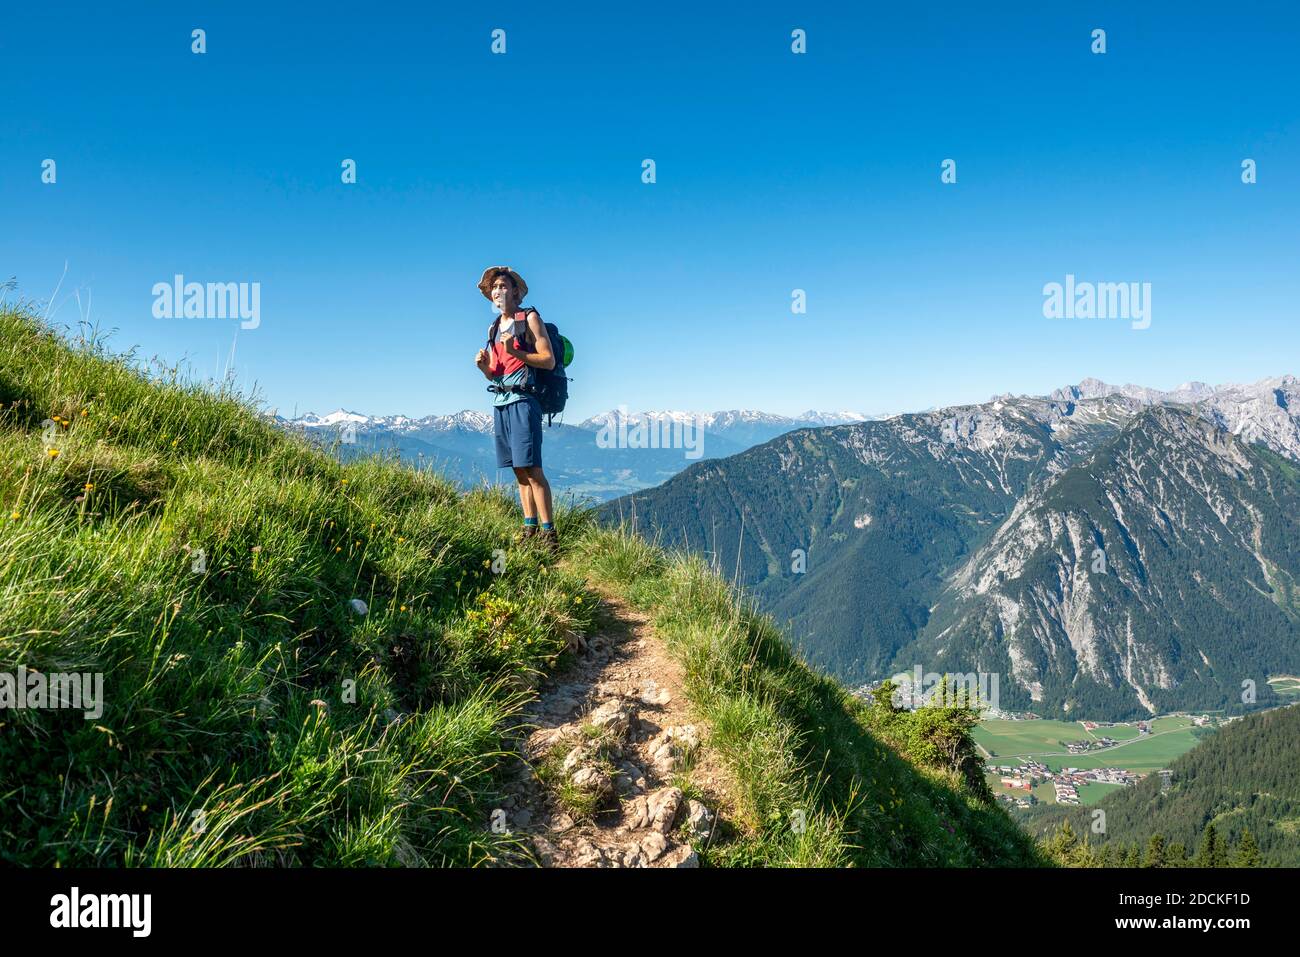 Randonnée sur un sentier de randonnée, Haidachstellwand, 5 sommets via ferrata, randonnée dans les montagnes Rofan, Tyrol, Autriche Banque D'Images